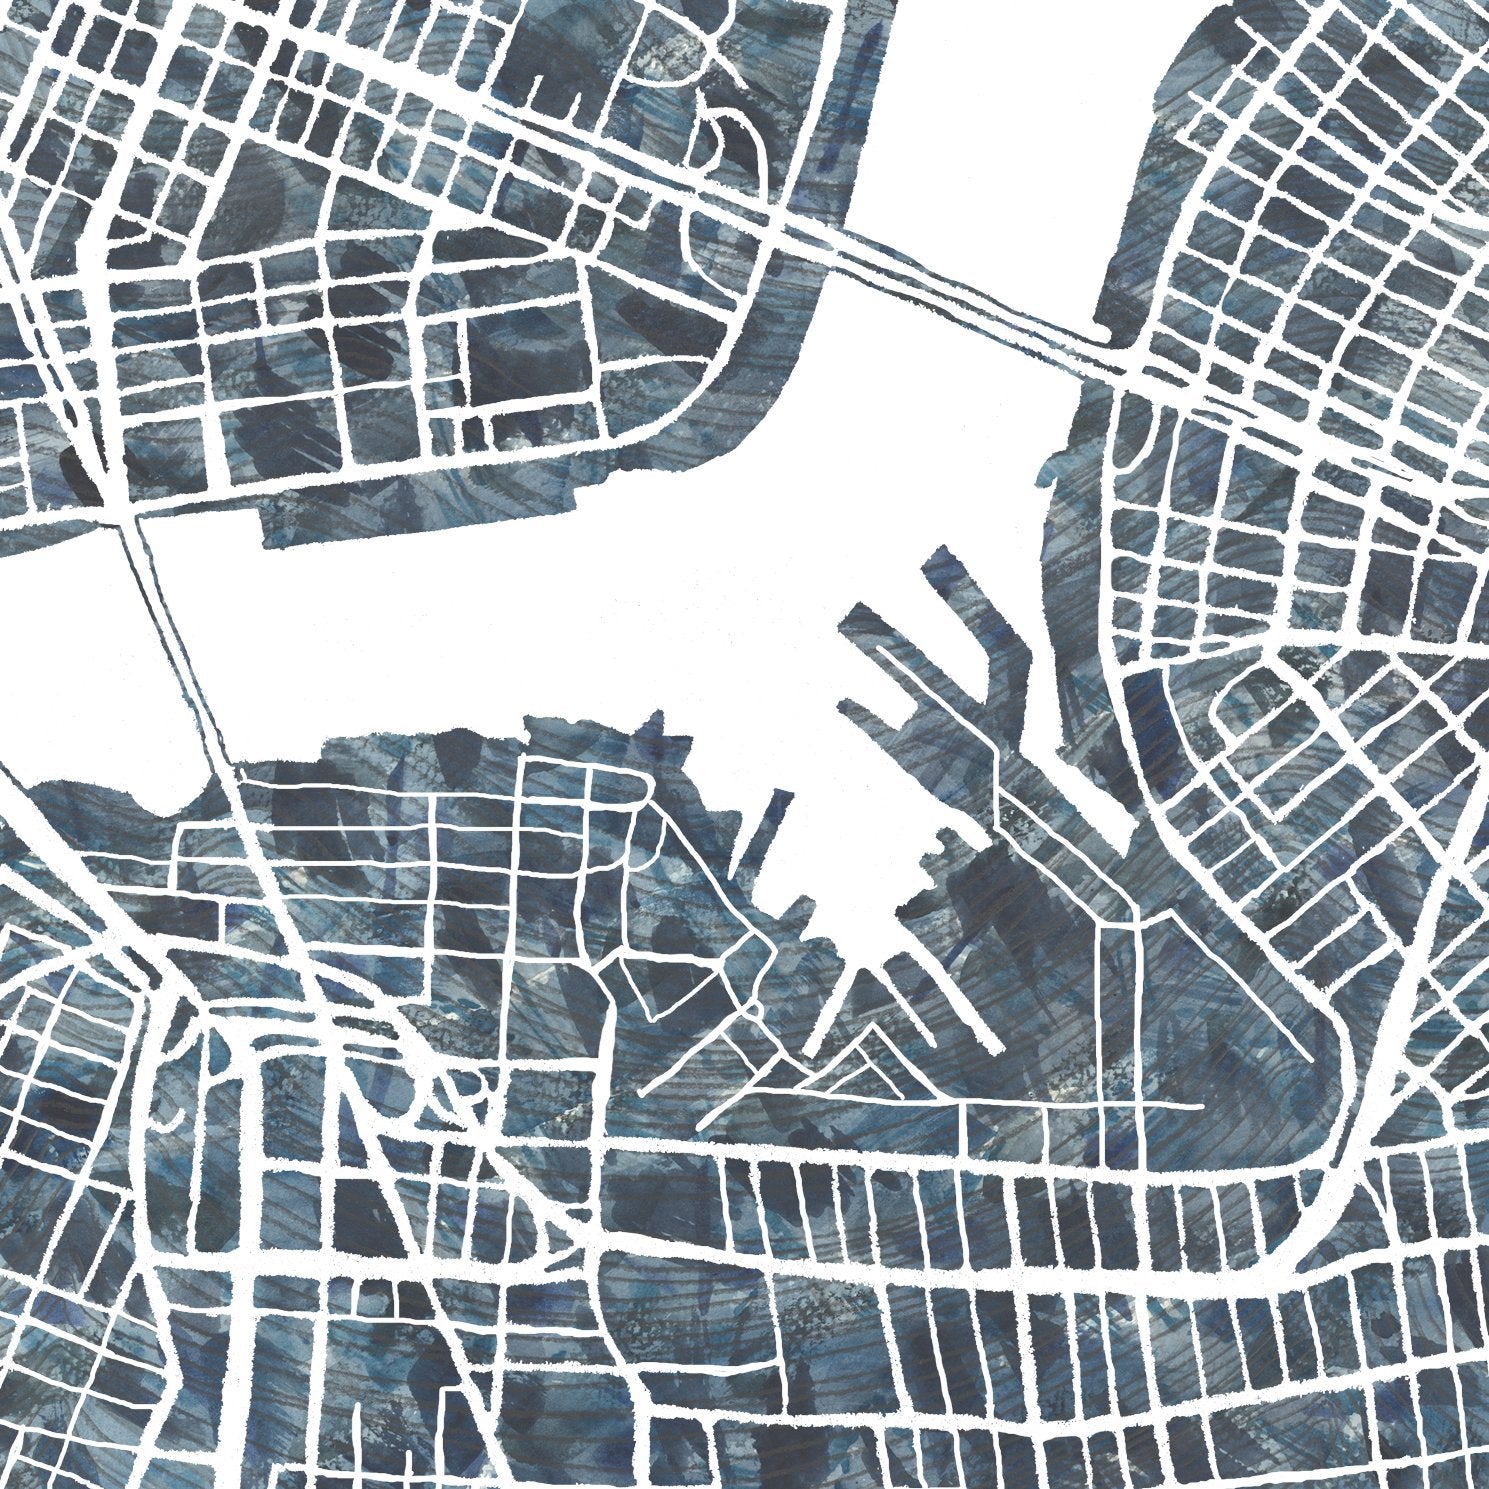 WILLIAMSBURG BROOKLYN Urban Fabrics City Map: PRINT